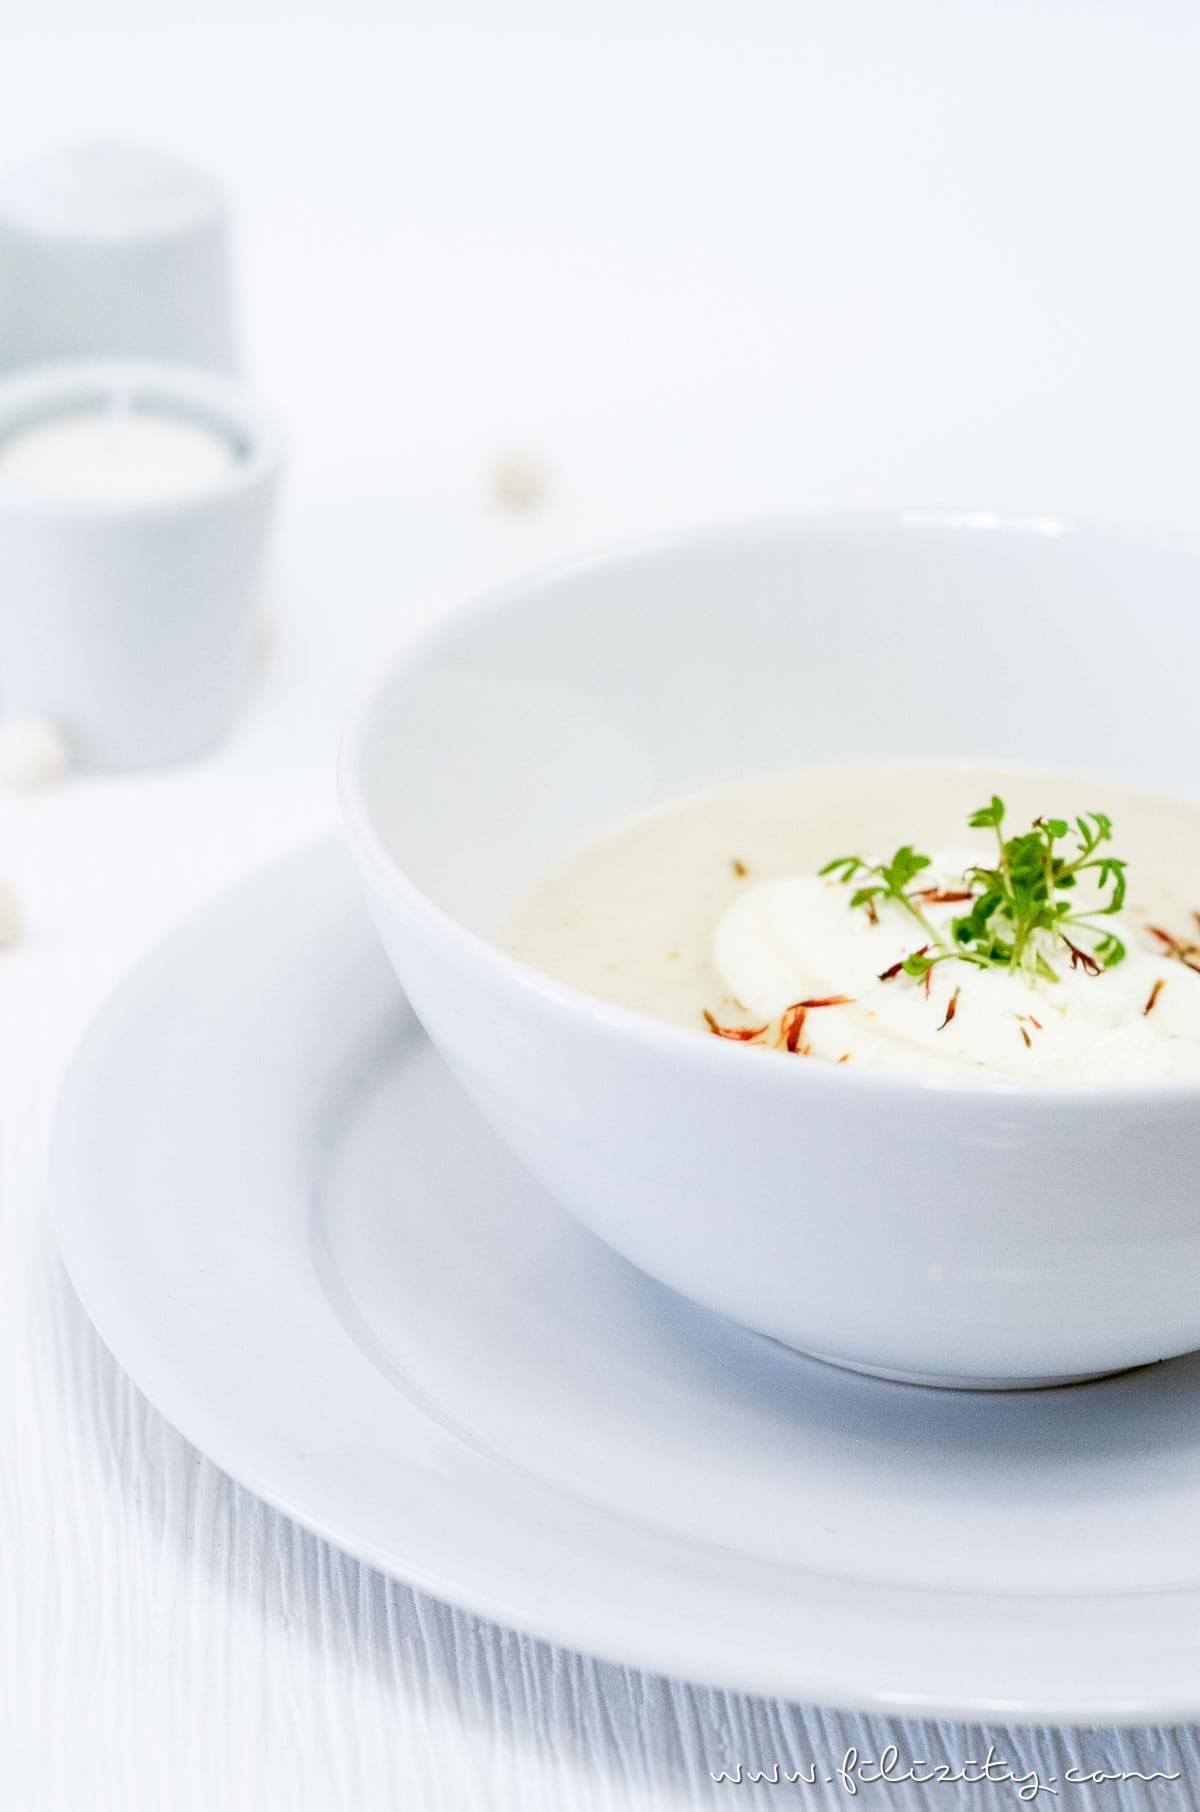 Rezept für orientalische Schwarzwurzel-Cremesuppe | Perfekt für Diner en Blanc | Filizity.com | Food-Blog aus dem Rheinland #vegetarisch #suppe #spargel